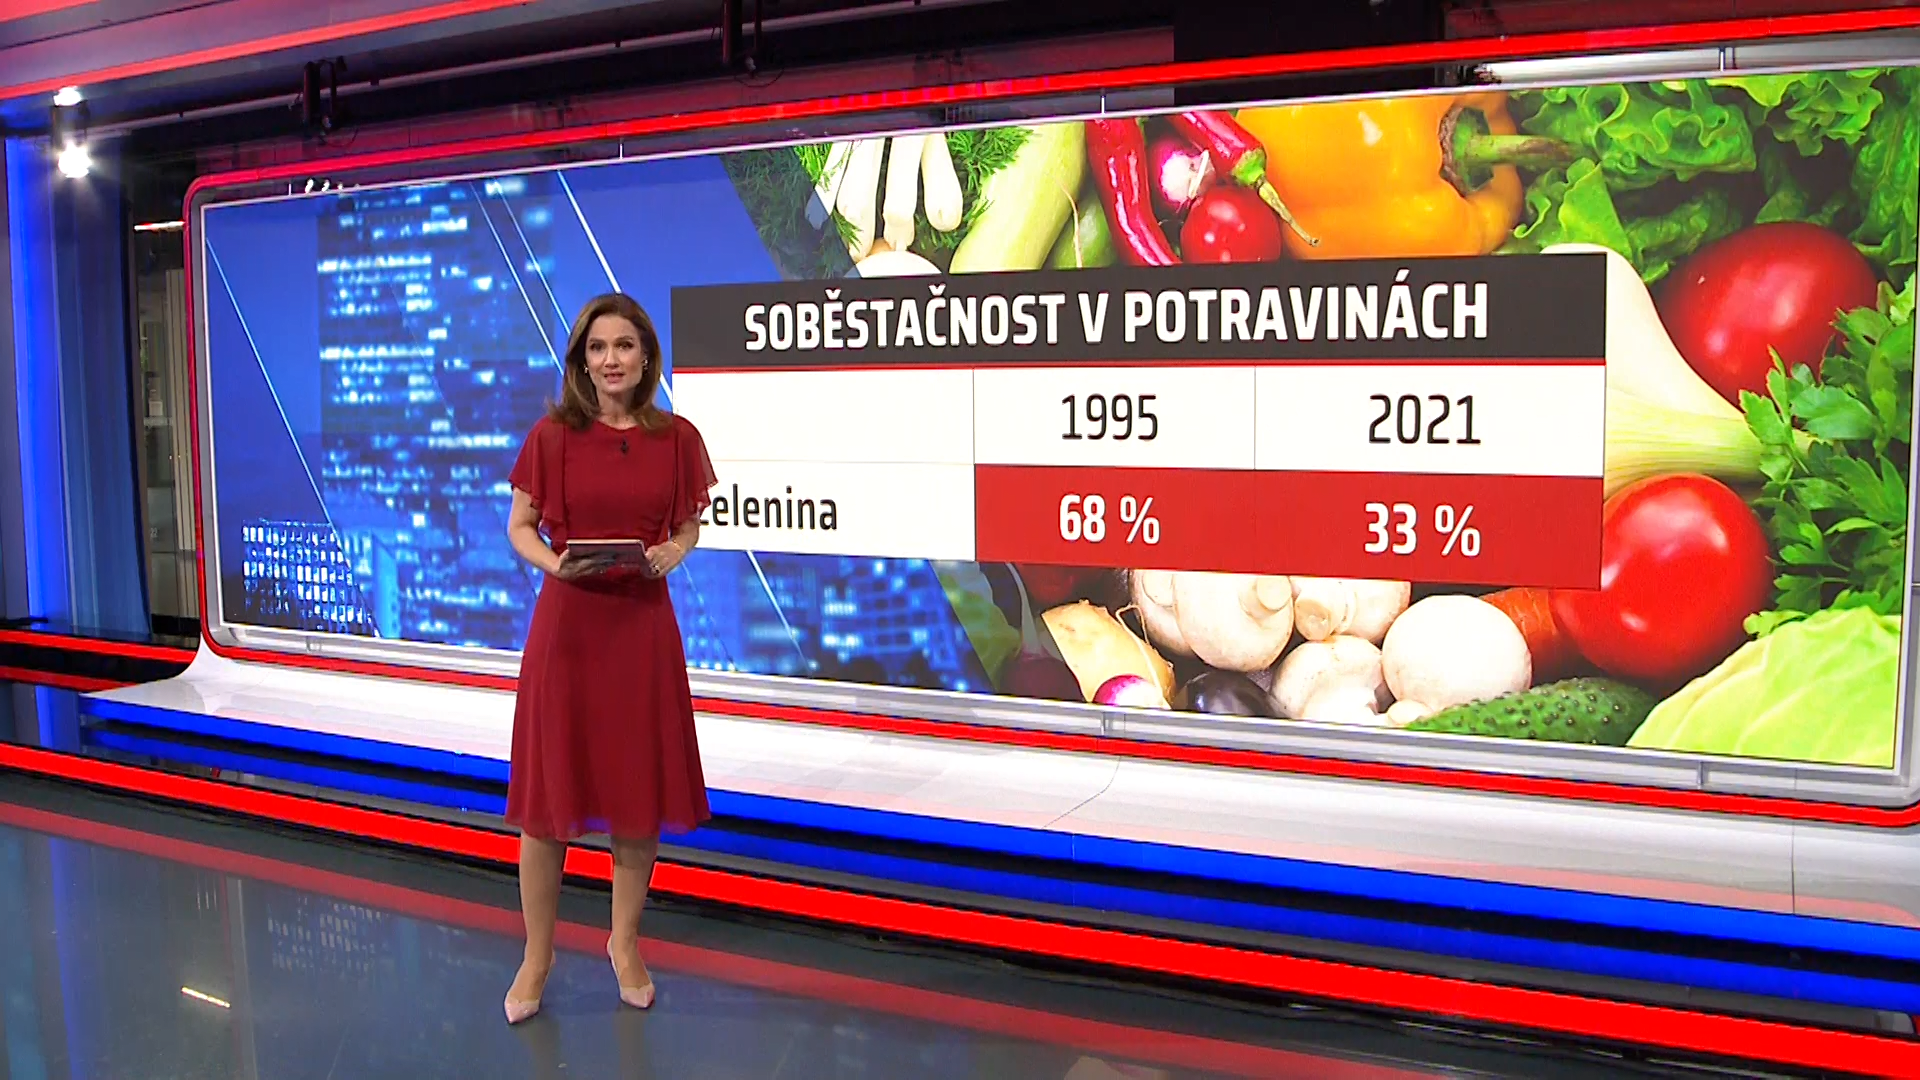 Ministr zemědělství Marek Výborný (KDU-ČSL) si dal za cíl udržet soběstačnost u potravin. Trend však podle expertů bude opačný.